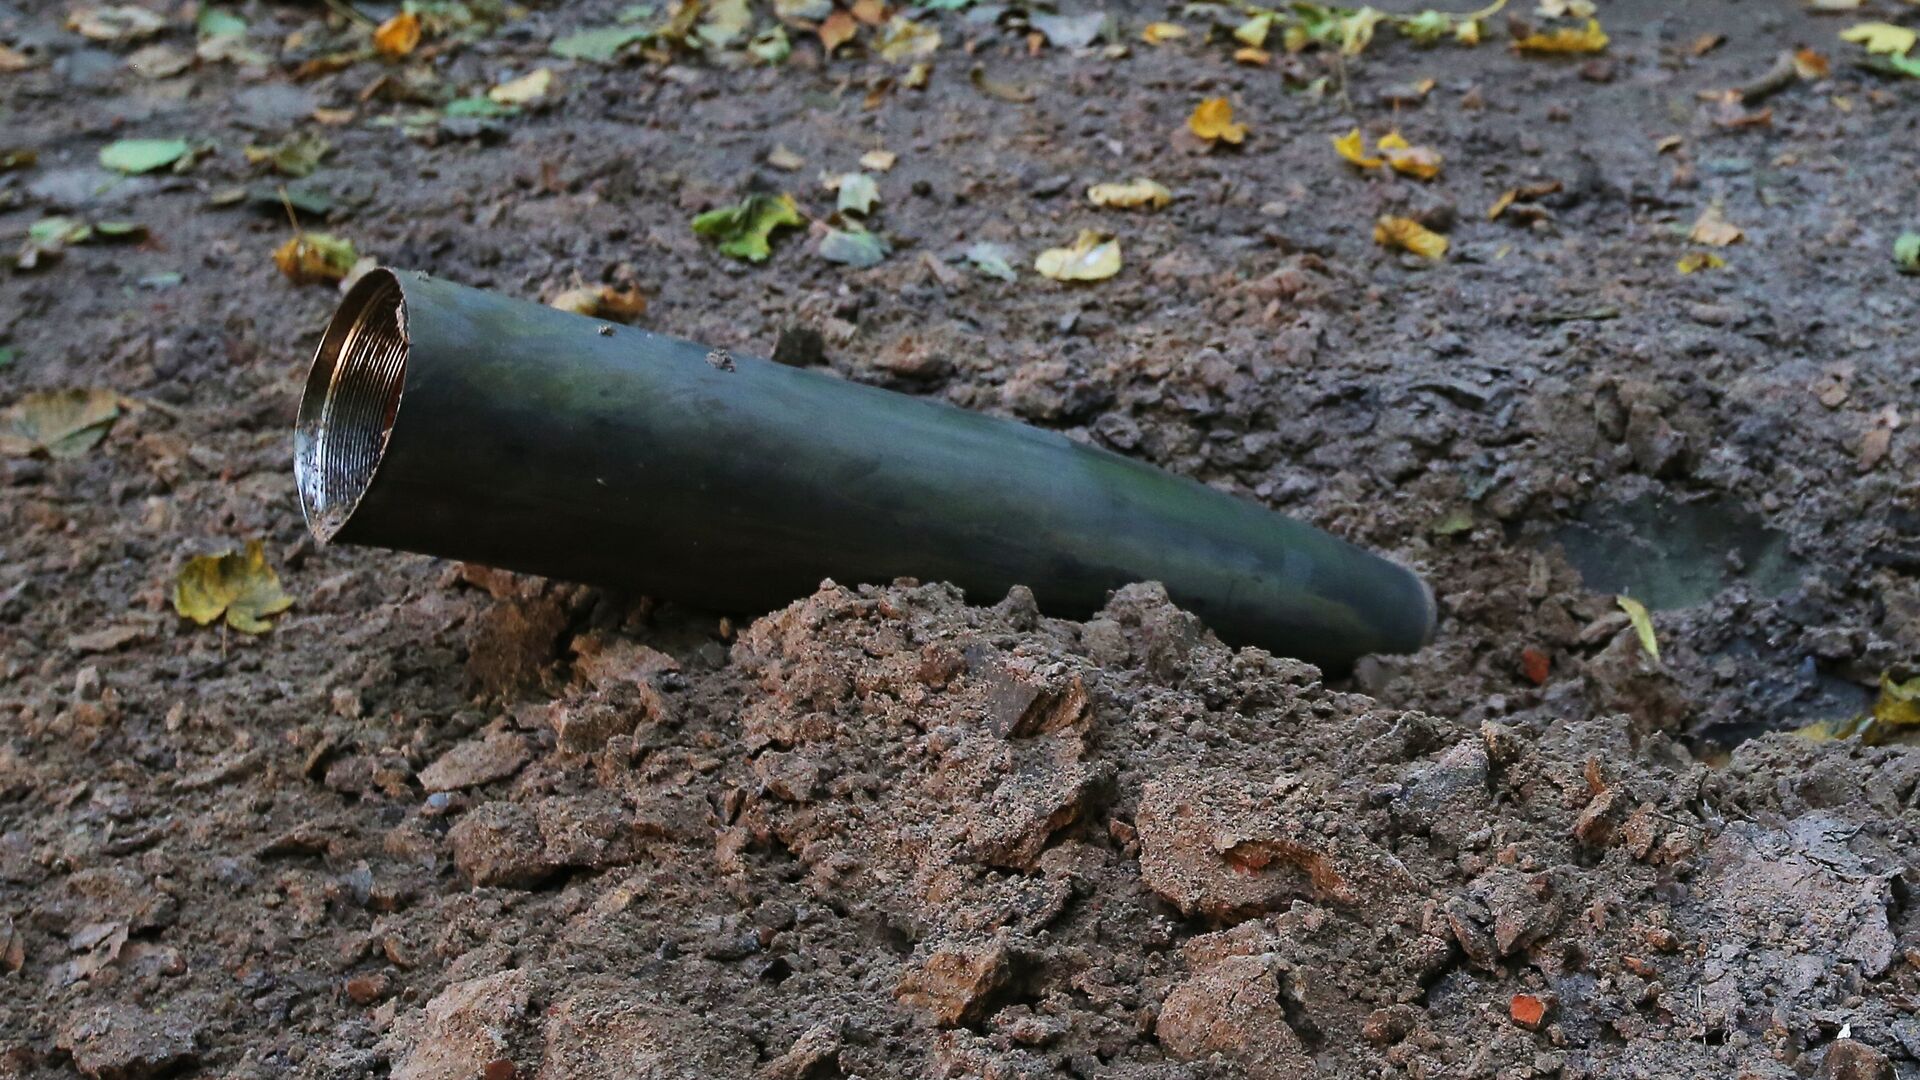 Оболочка снаряда в лесу после взрыва на военном складе под Черниговом. 9 октября 2018 - ИноСМИ, 1920, 01.08.2022